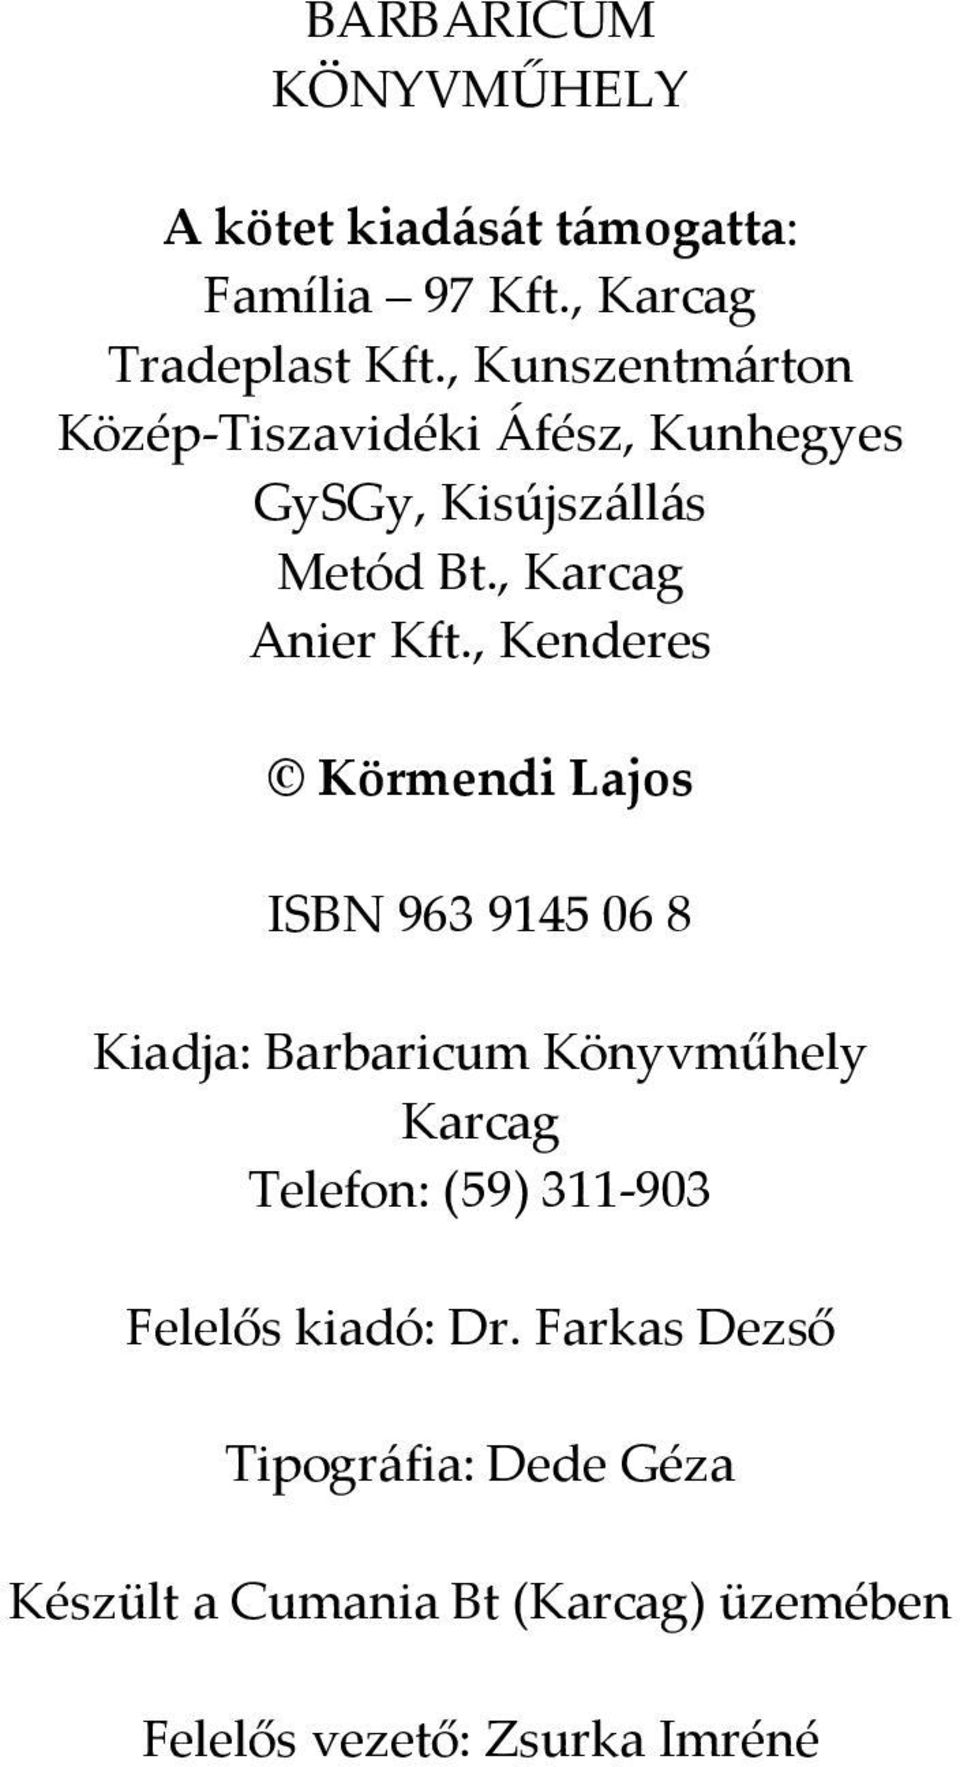 , Kenderes Körmendi Lajos ISBN 963 9145 06 8 Kiadja: Barbaricum Könyvműhely Karcag Telefon: (59) 311-903